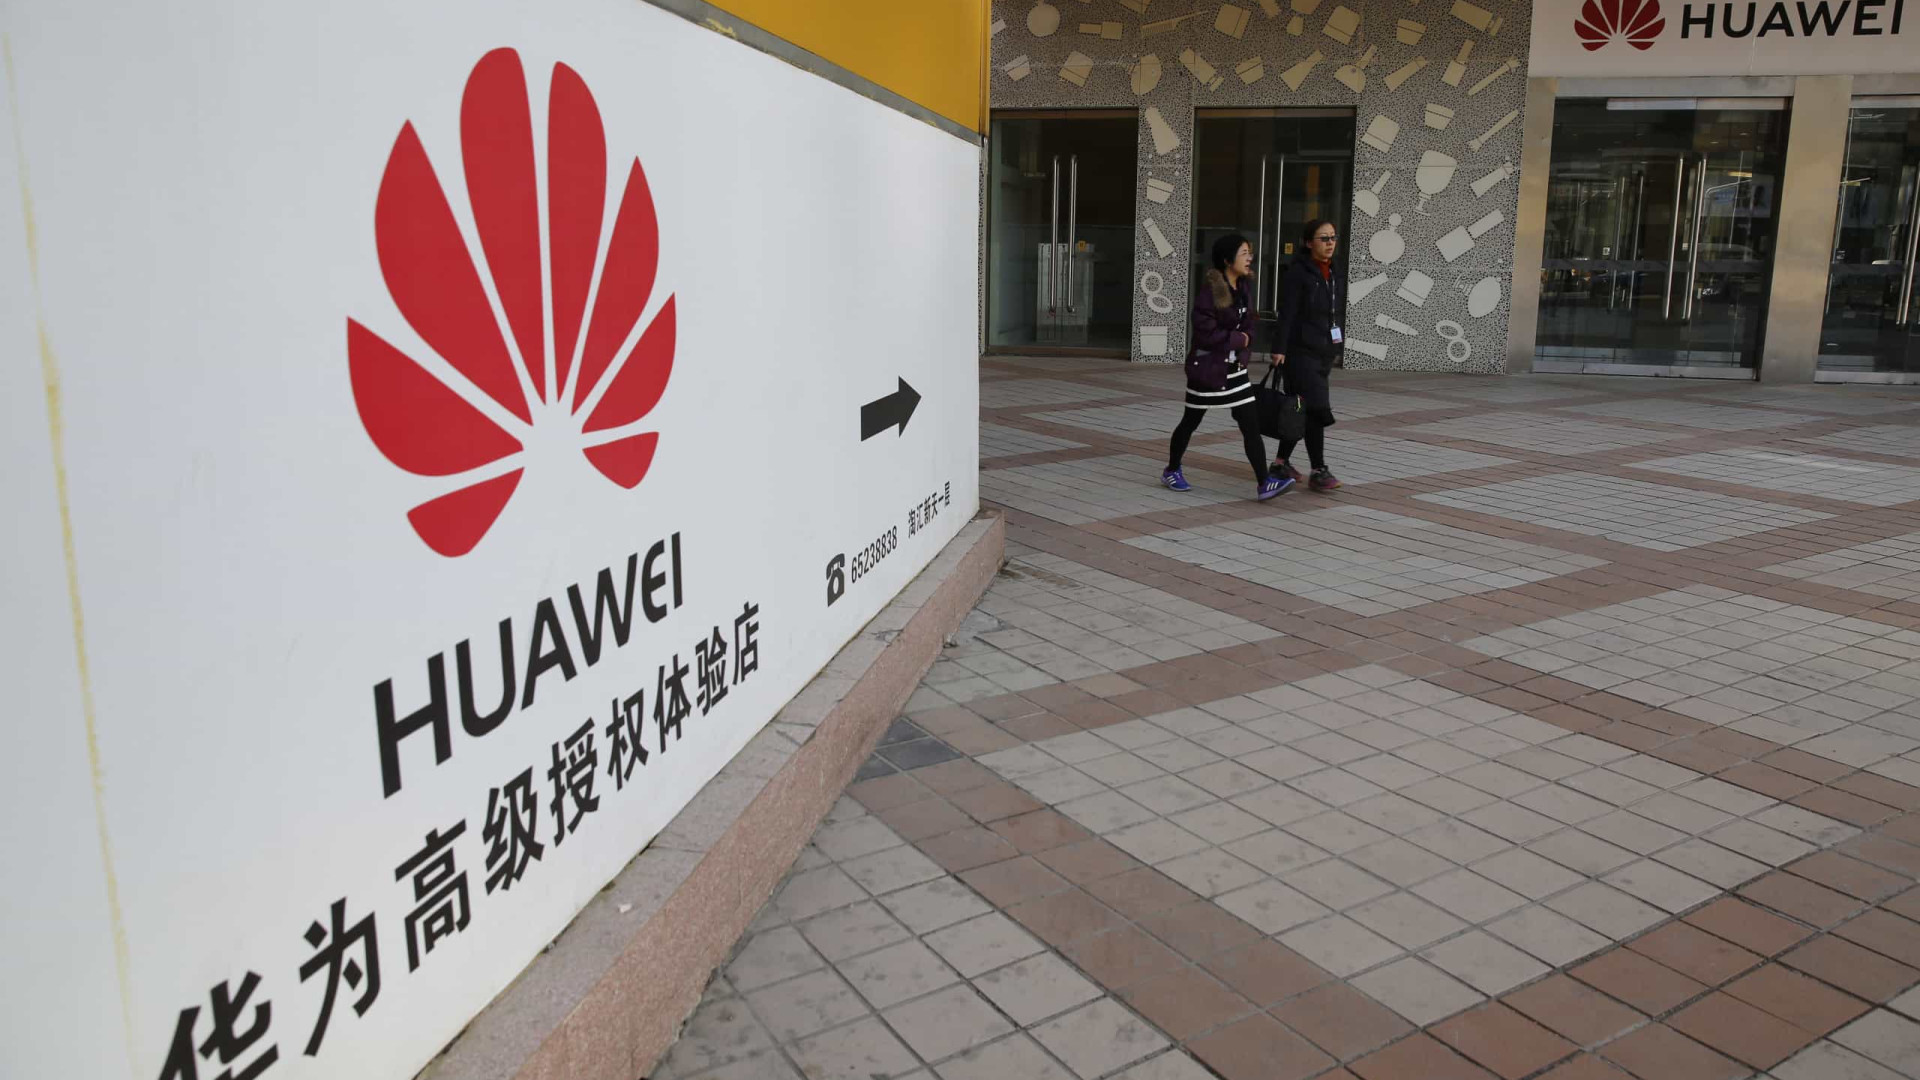 Huawei castigou funcionários que usaram iPhone em publicação no Twitter